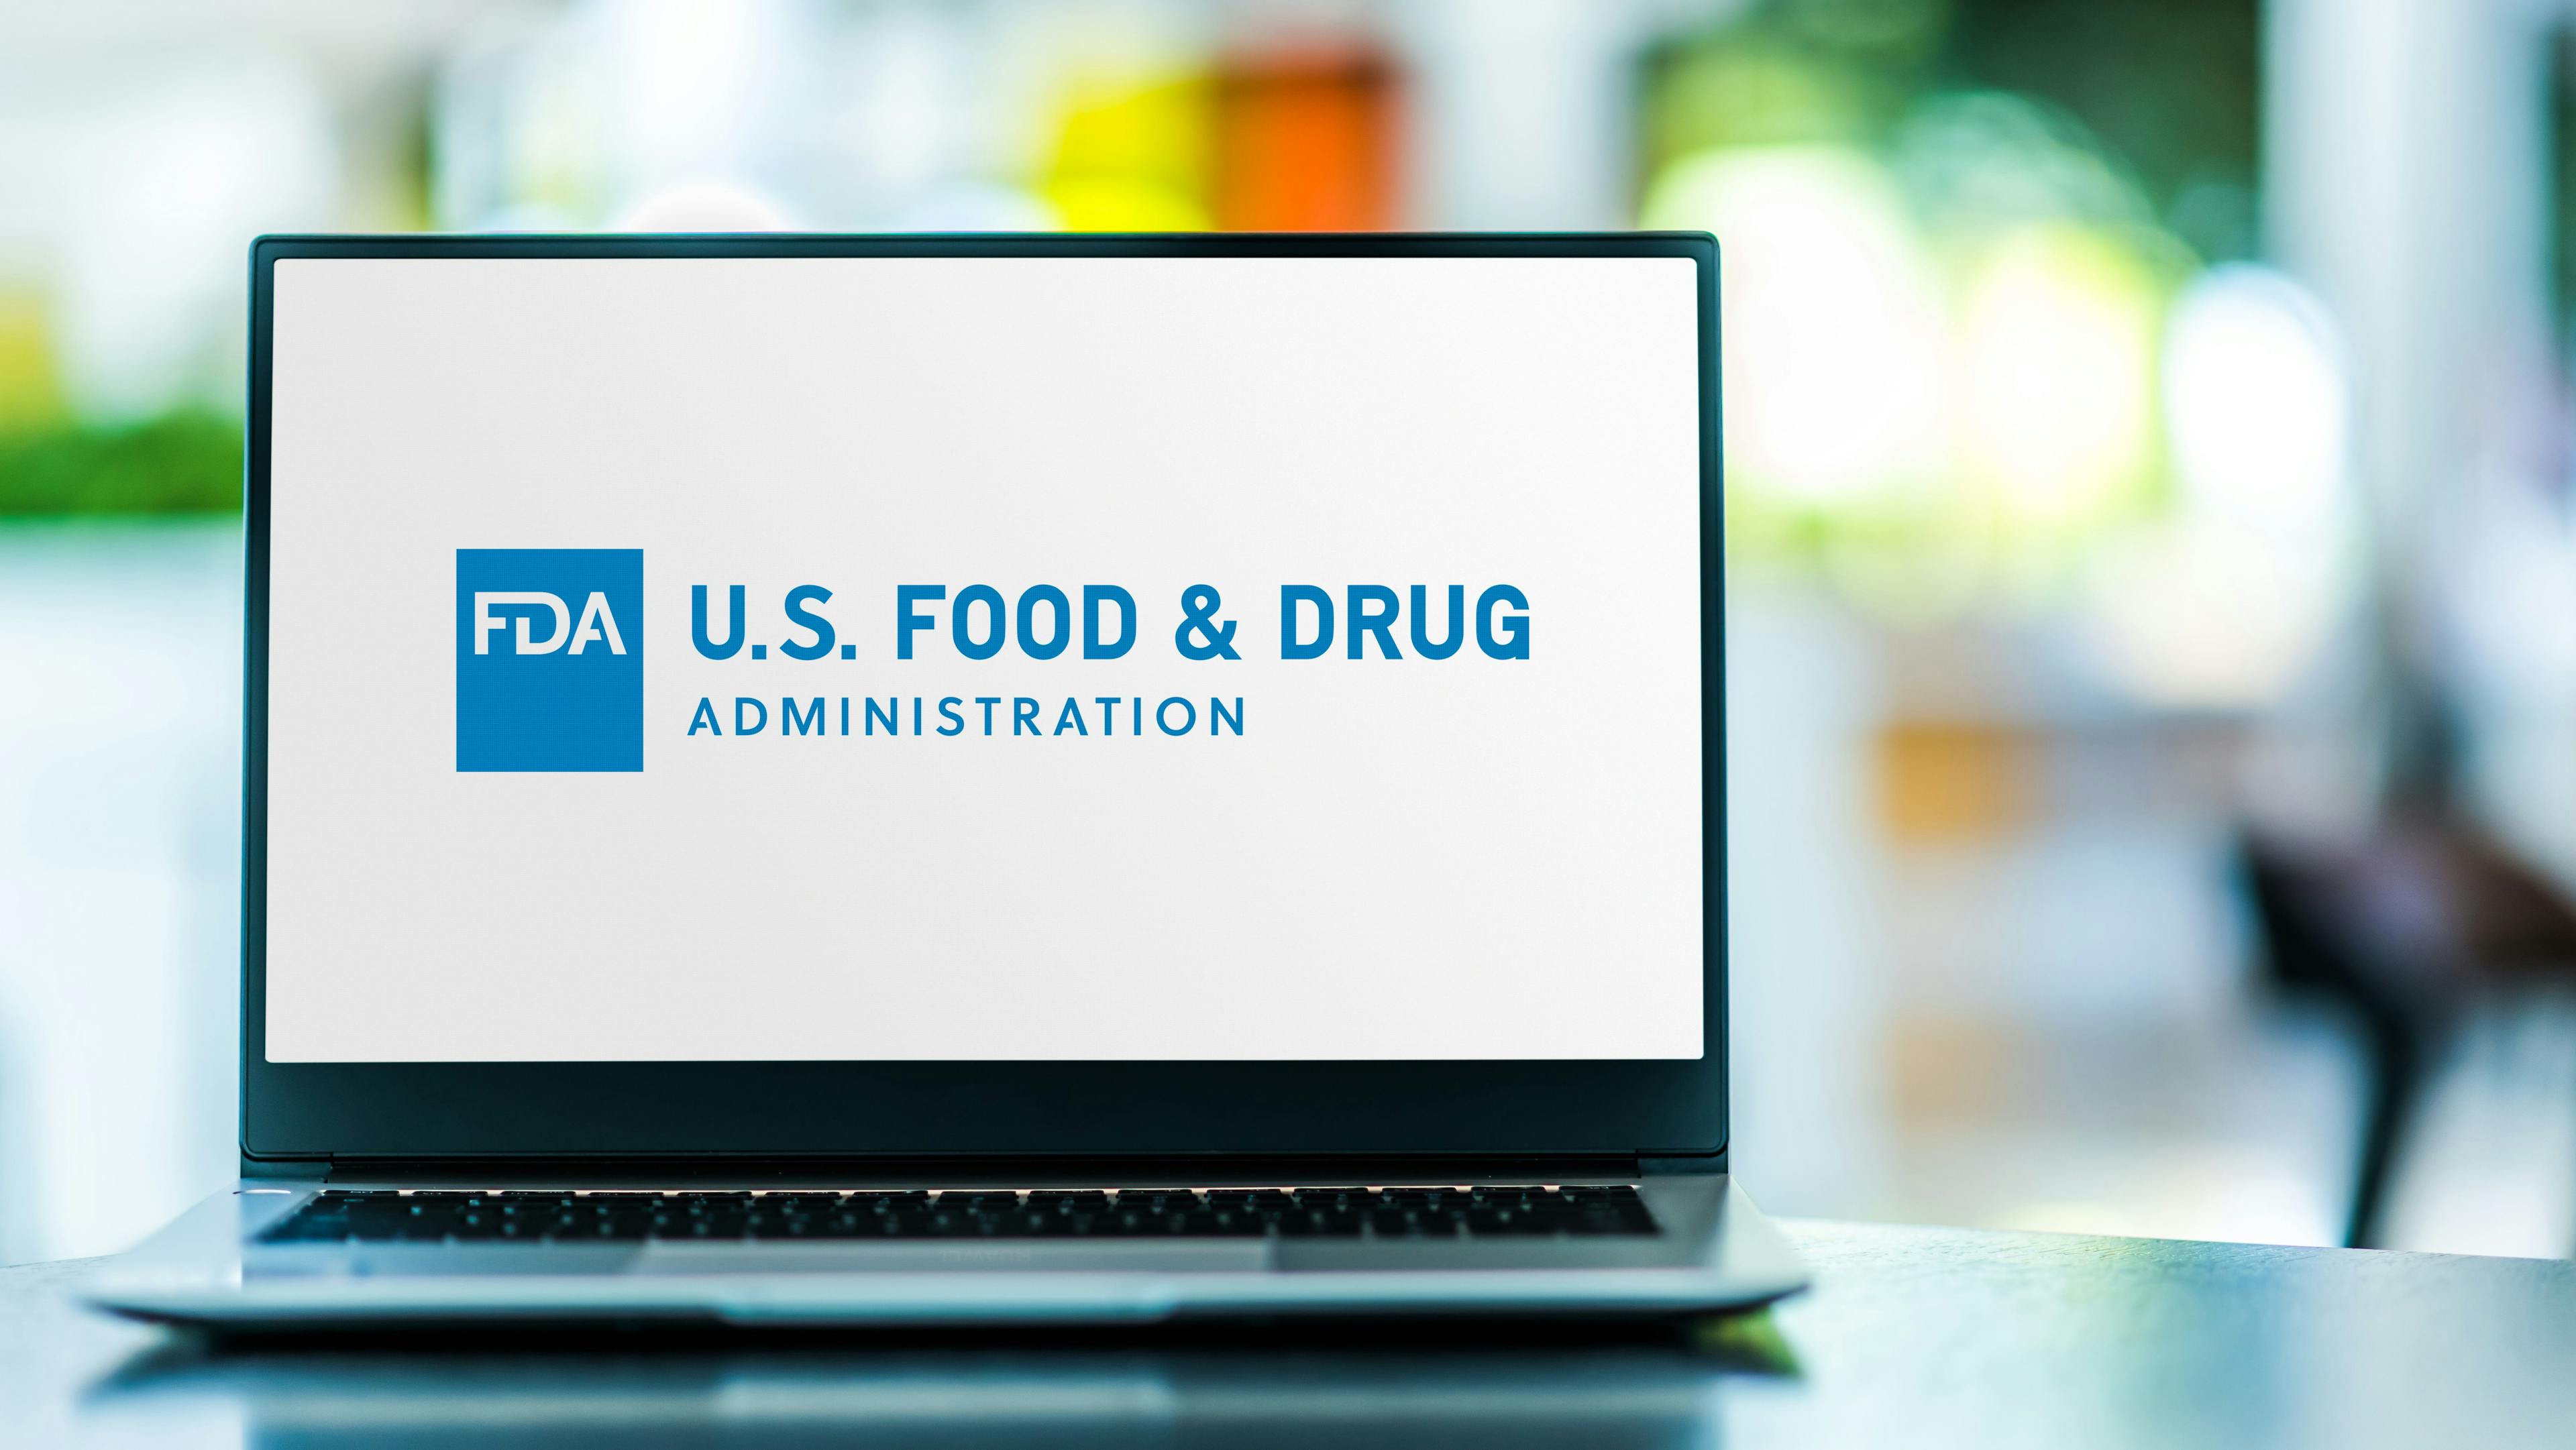 FDA approval. | Image Credit: monticellllo - stock.adobe.com